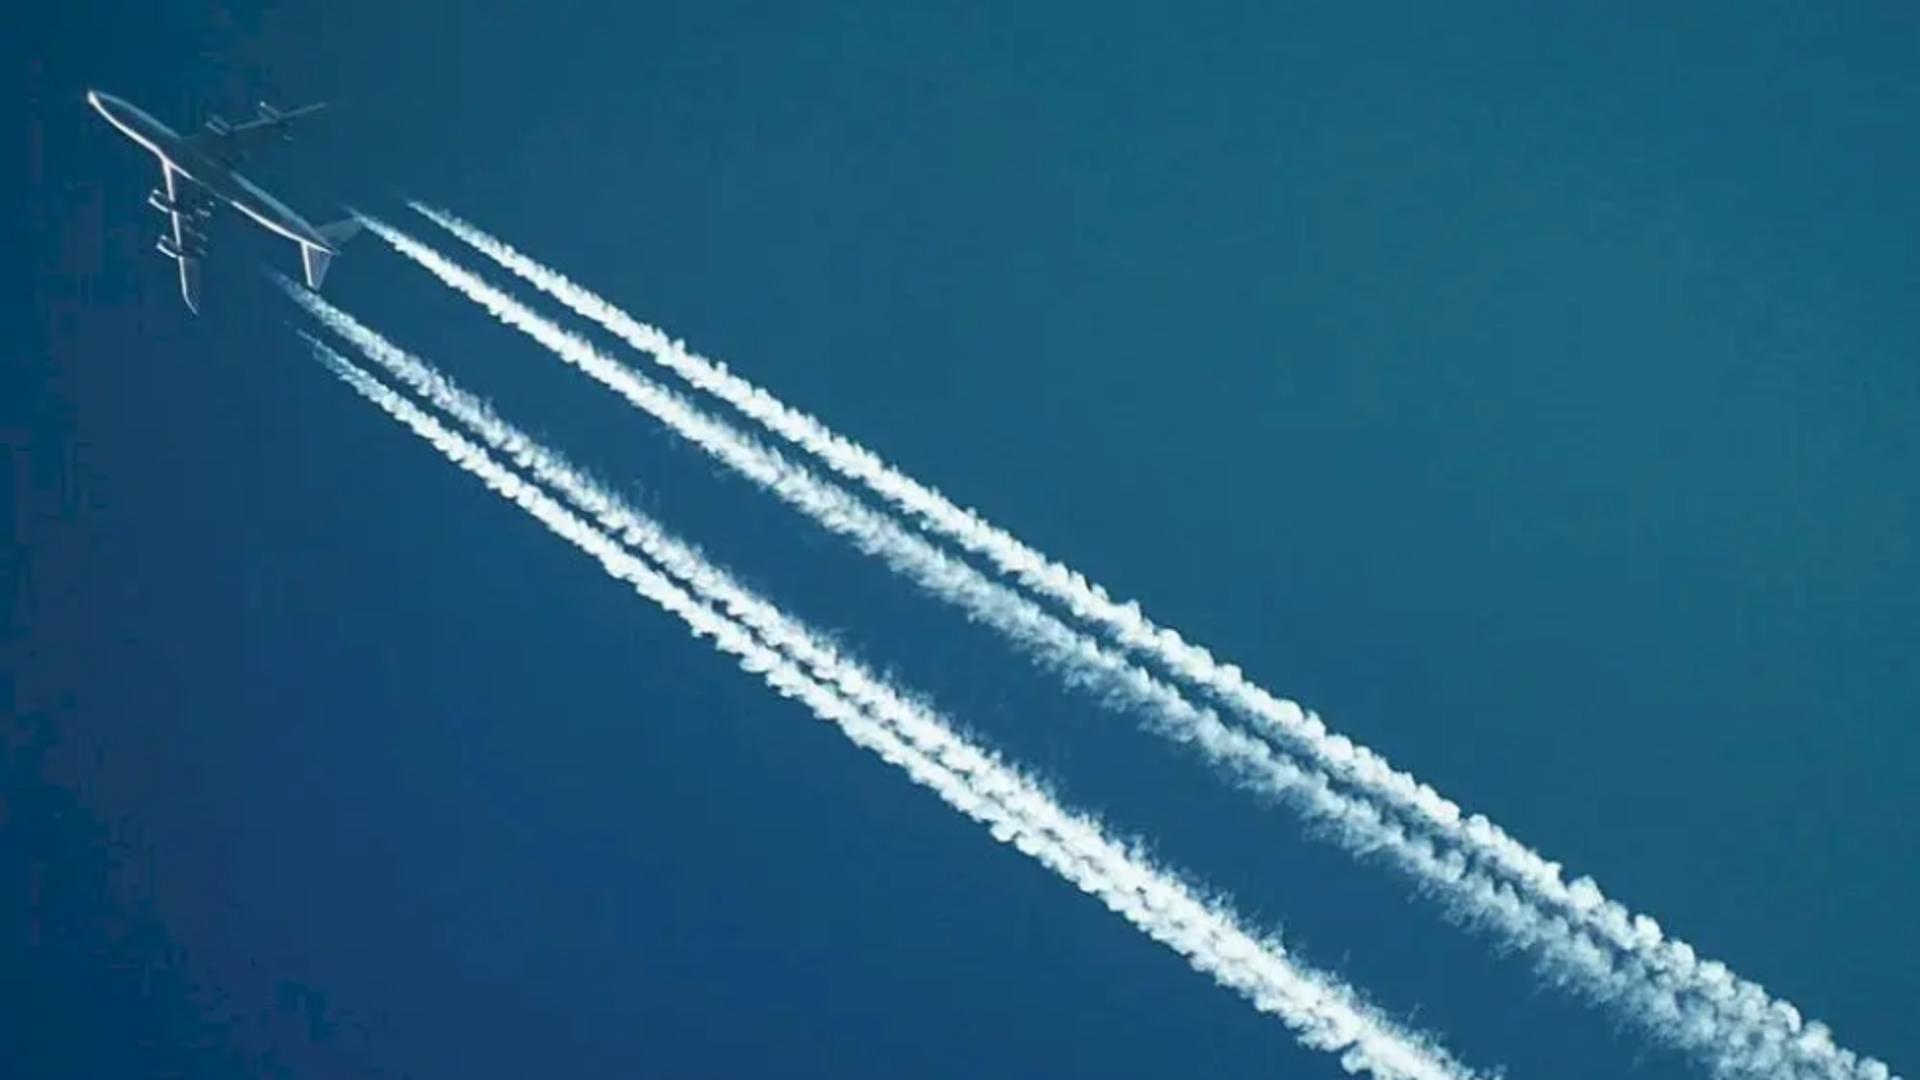 Ce sunt dârele lăsate de avioane pe cer – Misterul care a fascinat și intrigat oamenii de-a lungul anilor